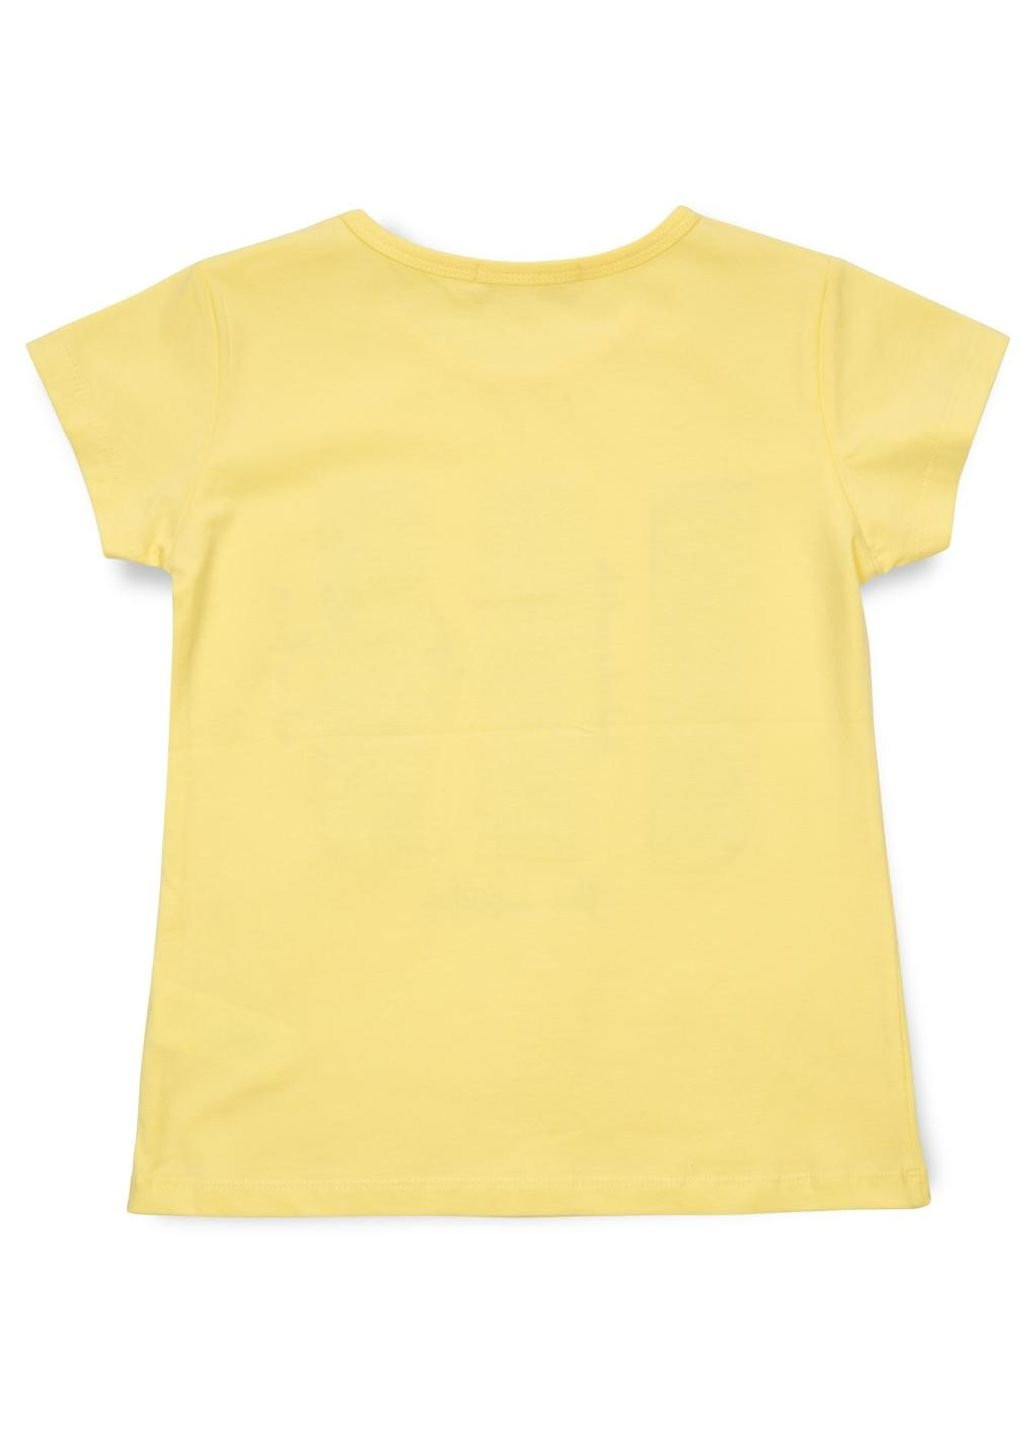 Желтая демисезонная футболка детская с пайетками (14299-134g-yellow) Breeze